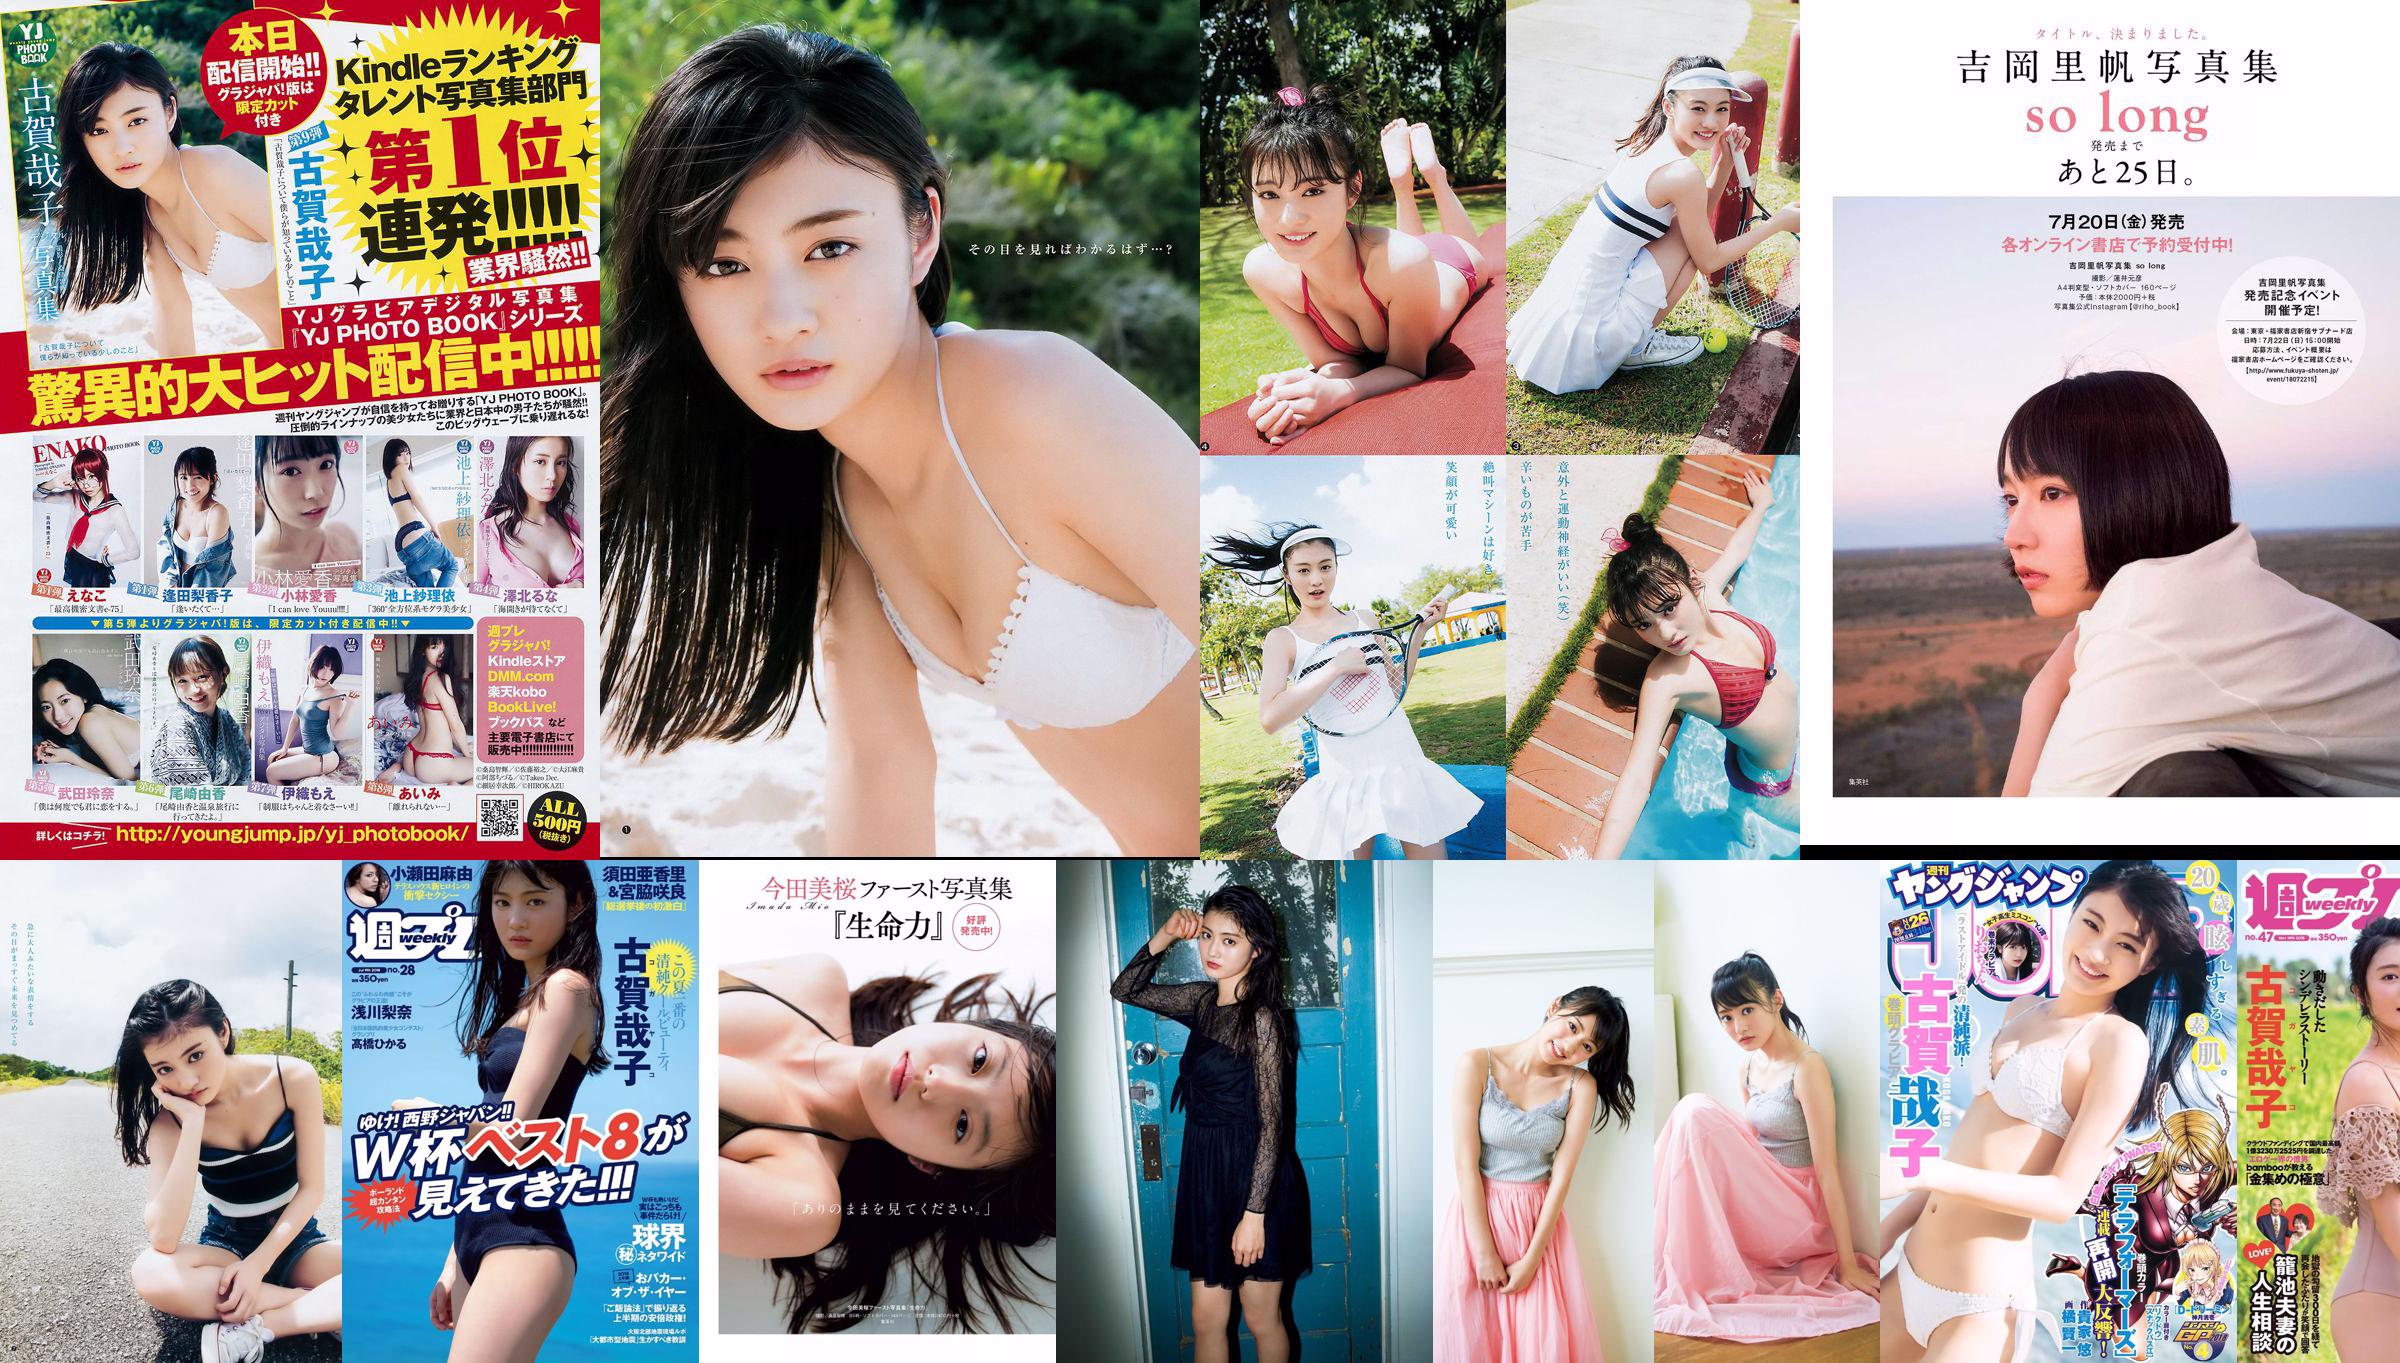 Yoshiko Koga Riochon [Wöchentlicher Jungsprung] Nr. 26 Fotomagazin im Jahr 2018 No.f2efcd Seite 1